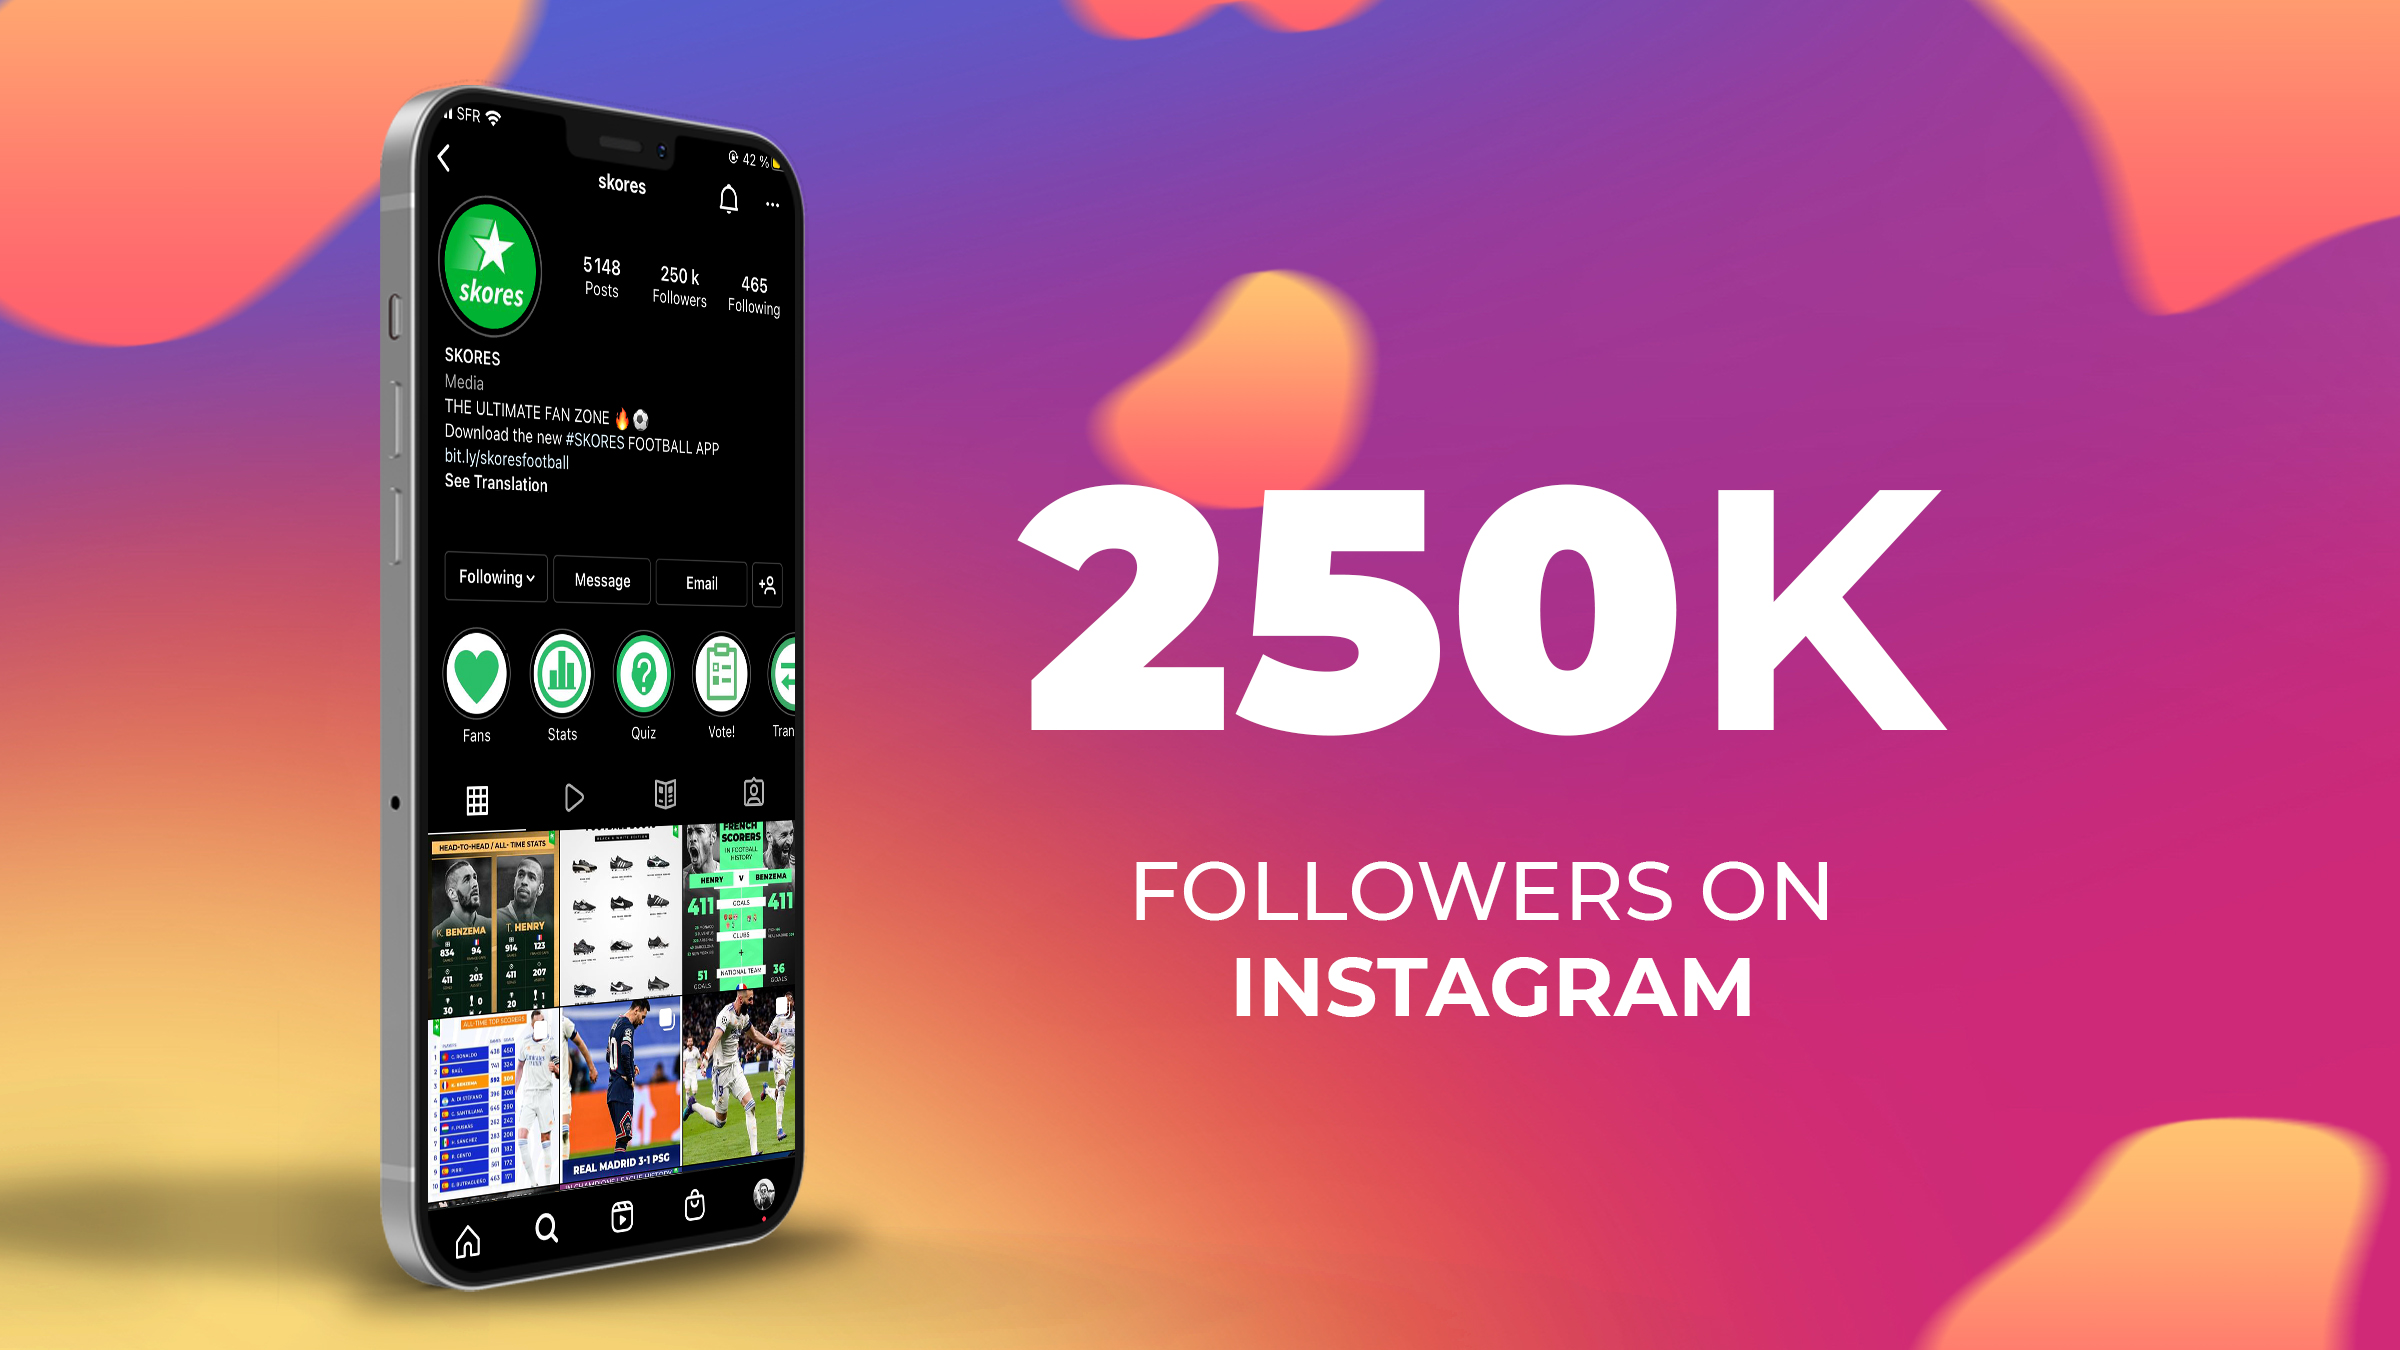 250k followers on Instagram for Skores!